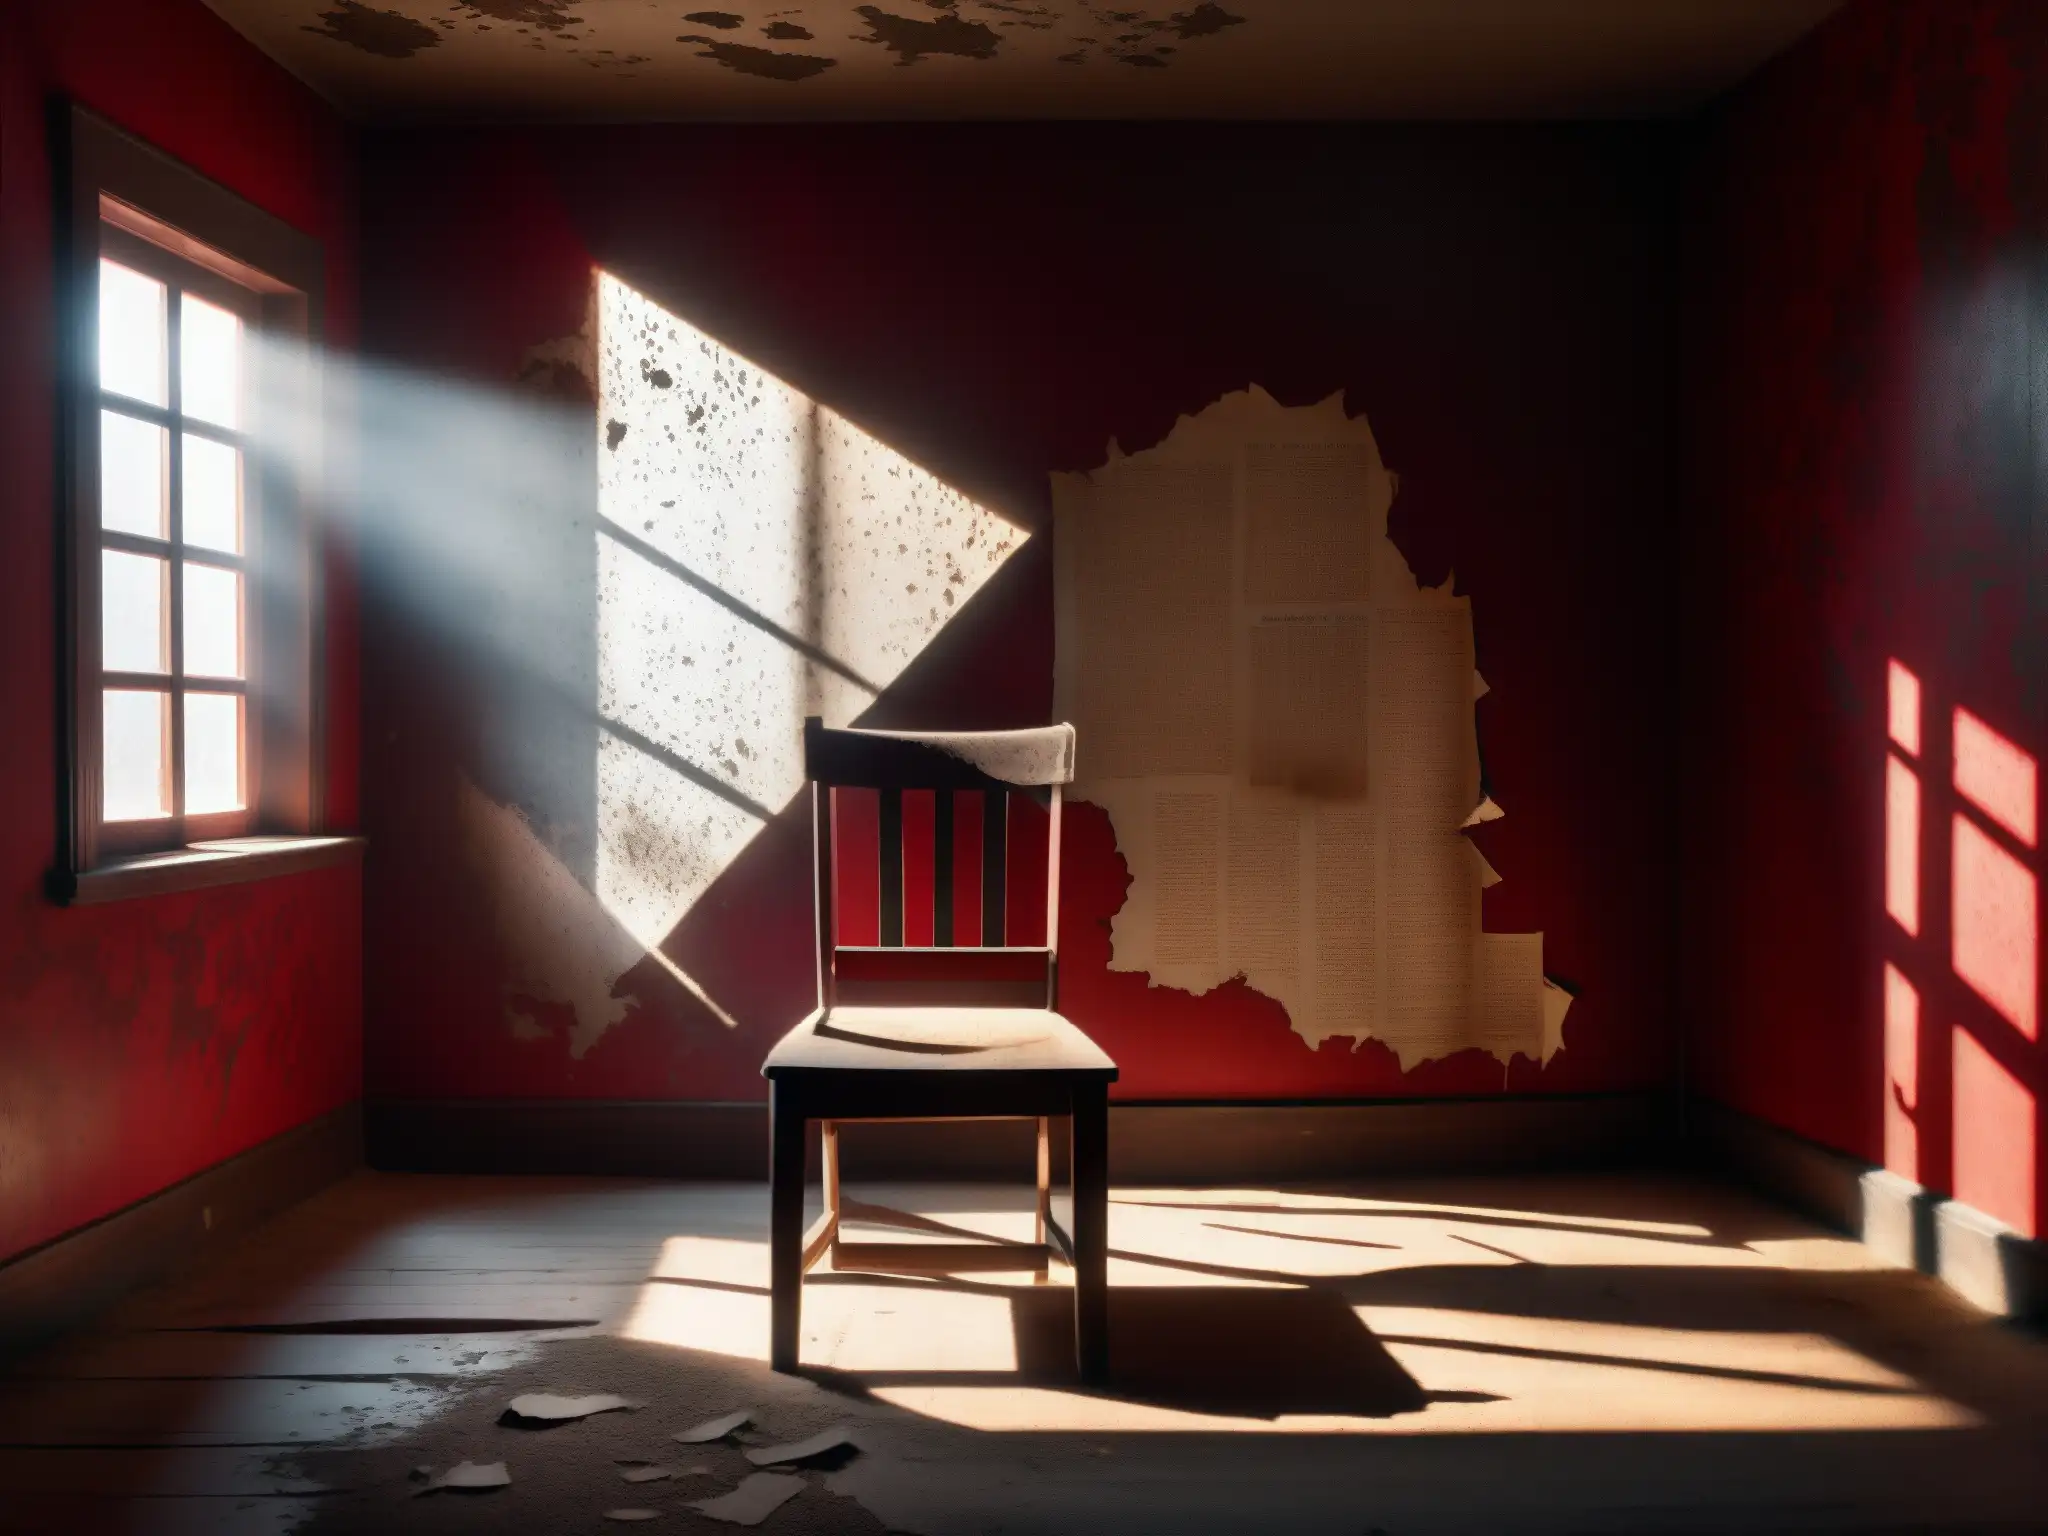 Una habitación sombría con papel tapiz rojo descascarado, sillas antiguas y símbolos misteriosos en las paredes